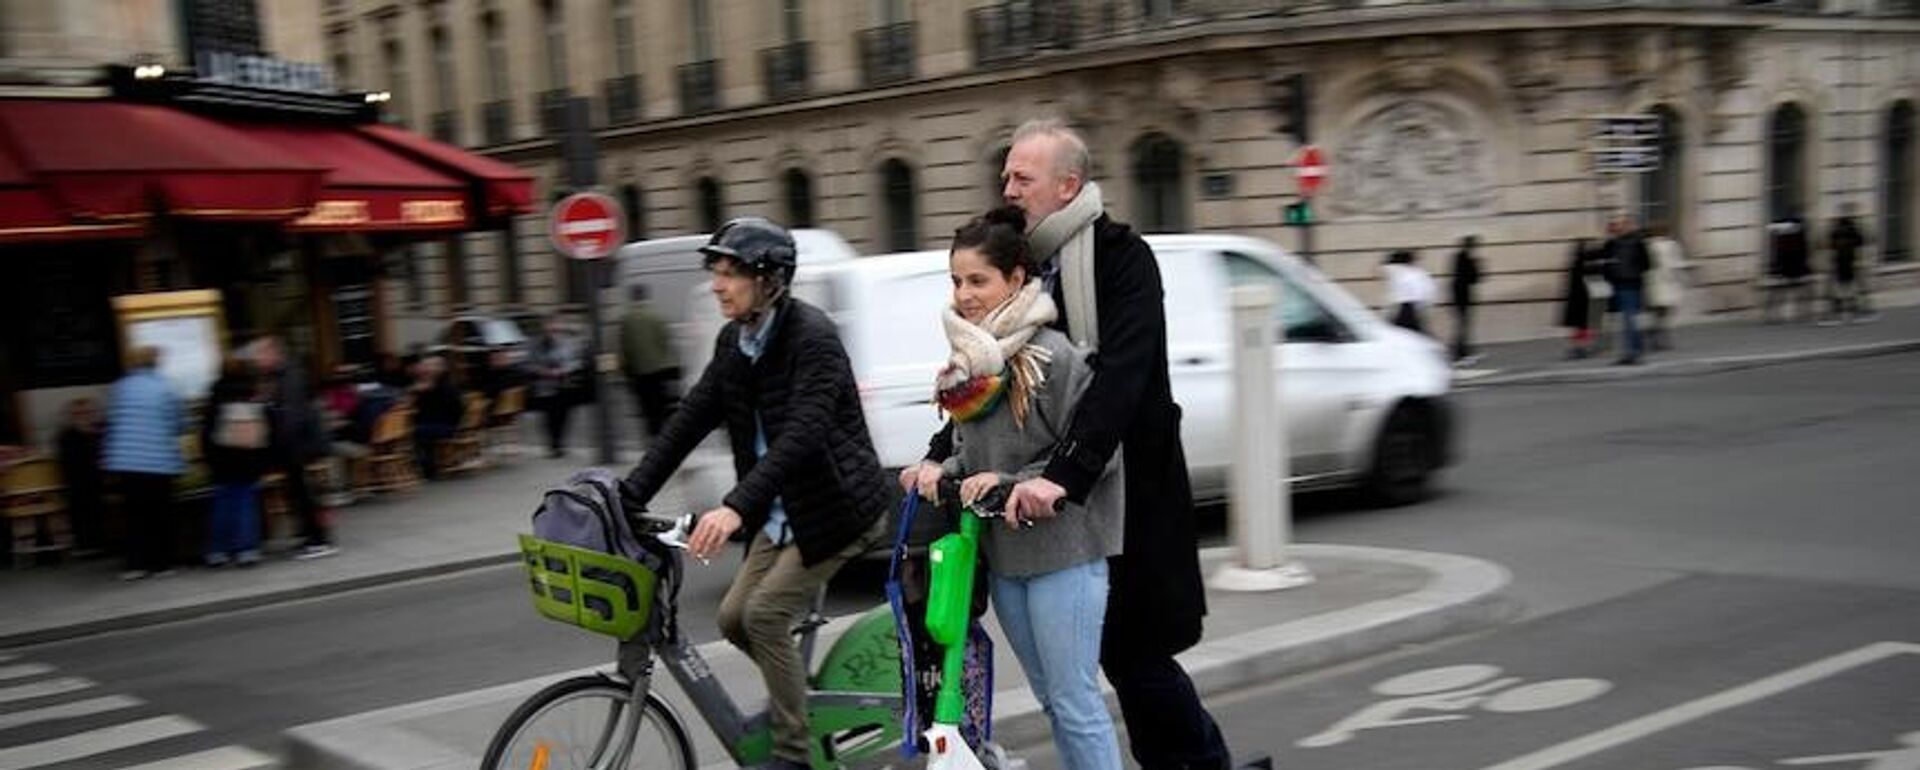 Fransa'nın başkenti Paris'te yaşayanlar, elektrikli scooter kiralama hizmetinin geleceğini belirleyecek referandum için oy kullanıyor. - Sputnik Türkiye, 1920, 02.04.2023